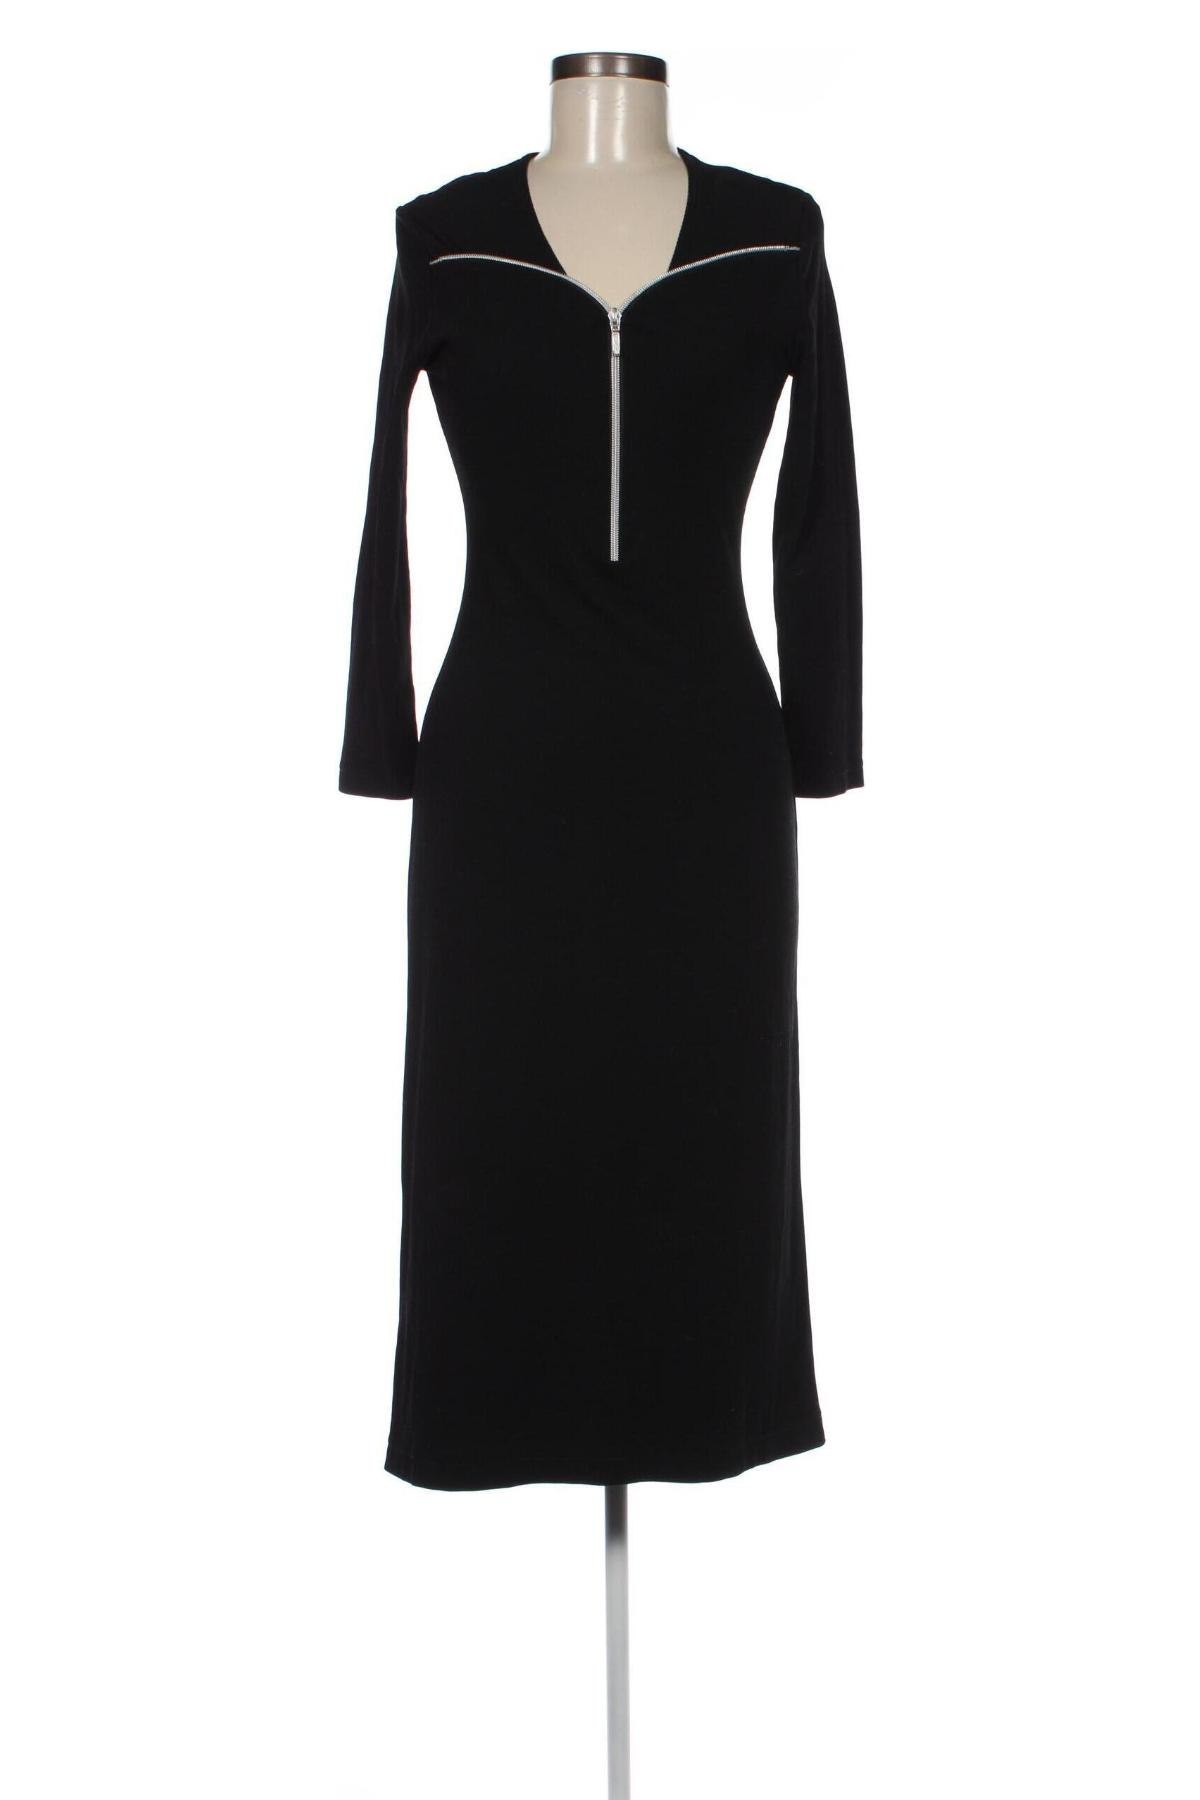 Φόρεμα Ashley Brooke, Μέγεθος S, Χρώμα Μαύρο, Τιμή 13,56 €